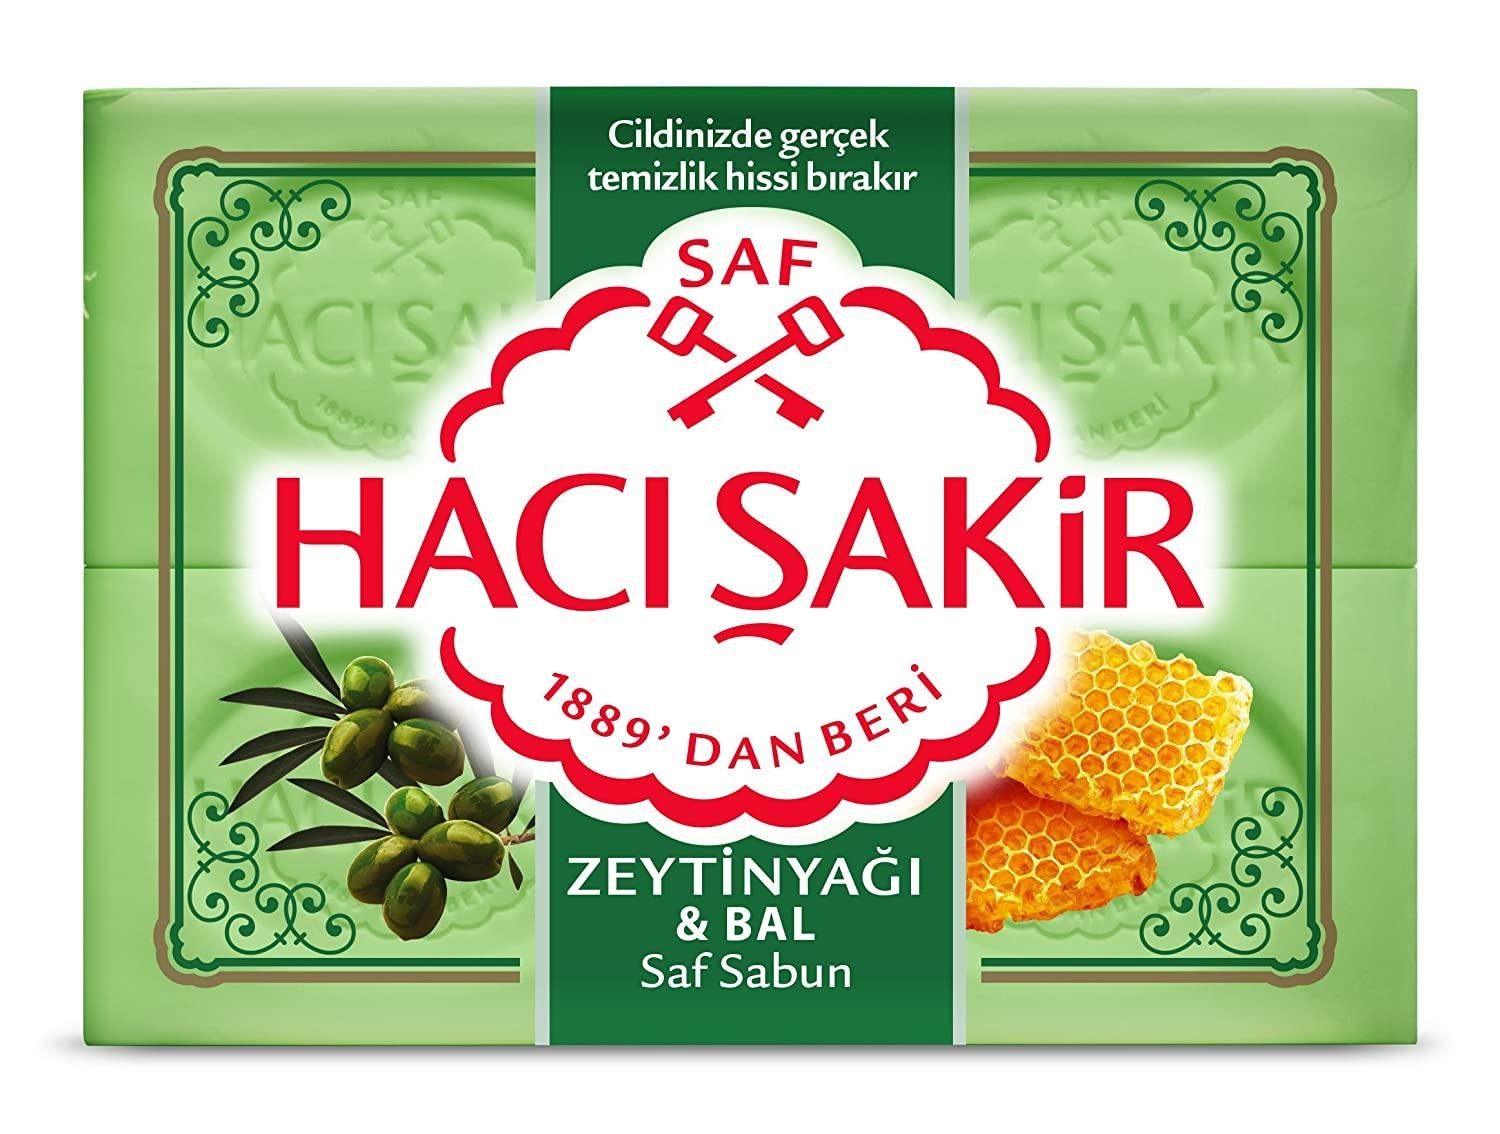 (4x150g) Sakir - Seife Olivenöl Sakir Zeytinyag Handseife Haci & ve Haci Bali Honig Sabun